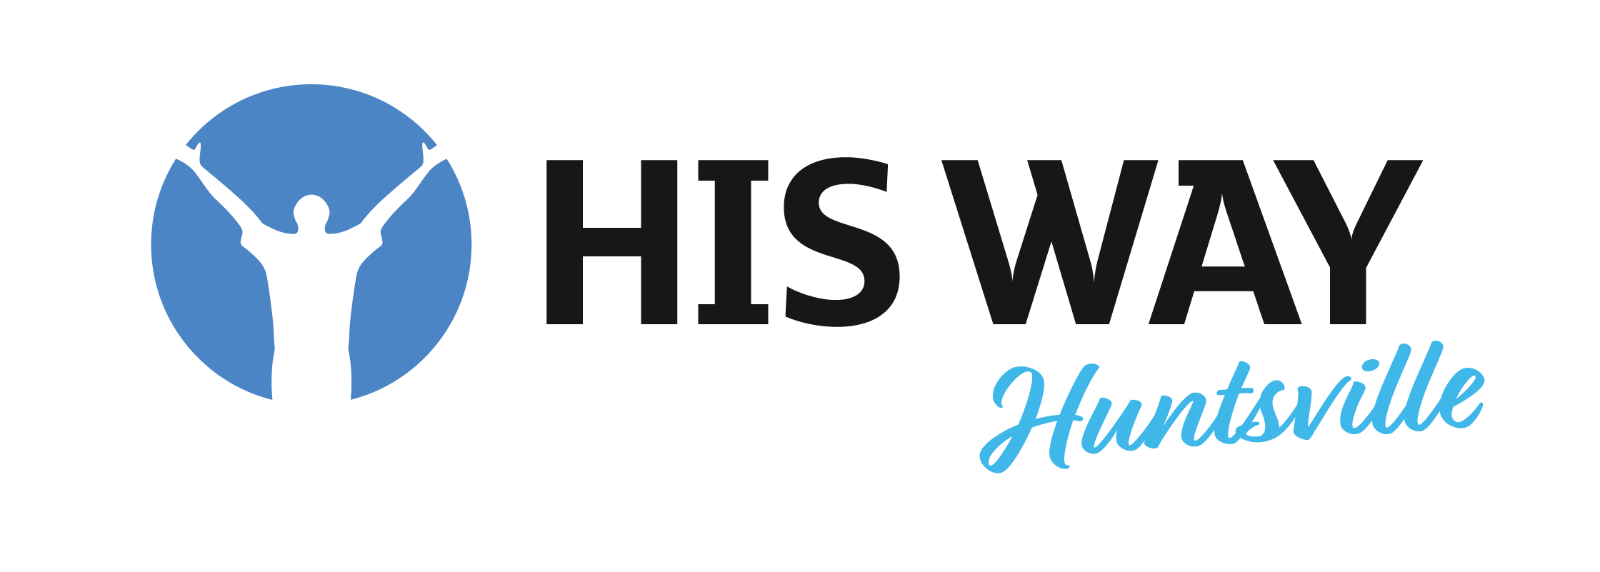 HisWay-logo-heading-03.png